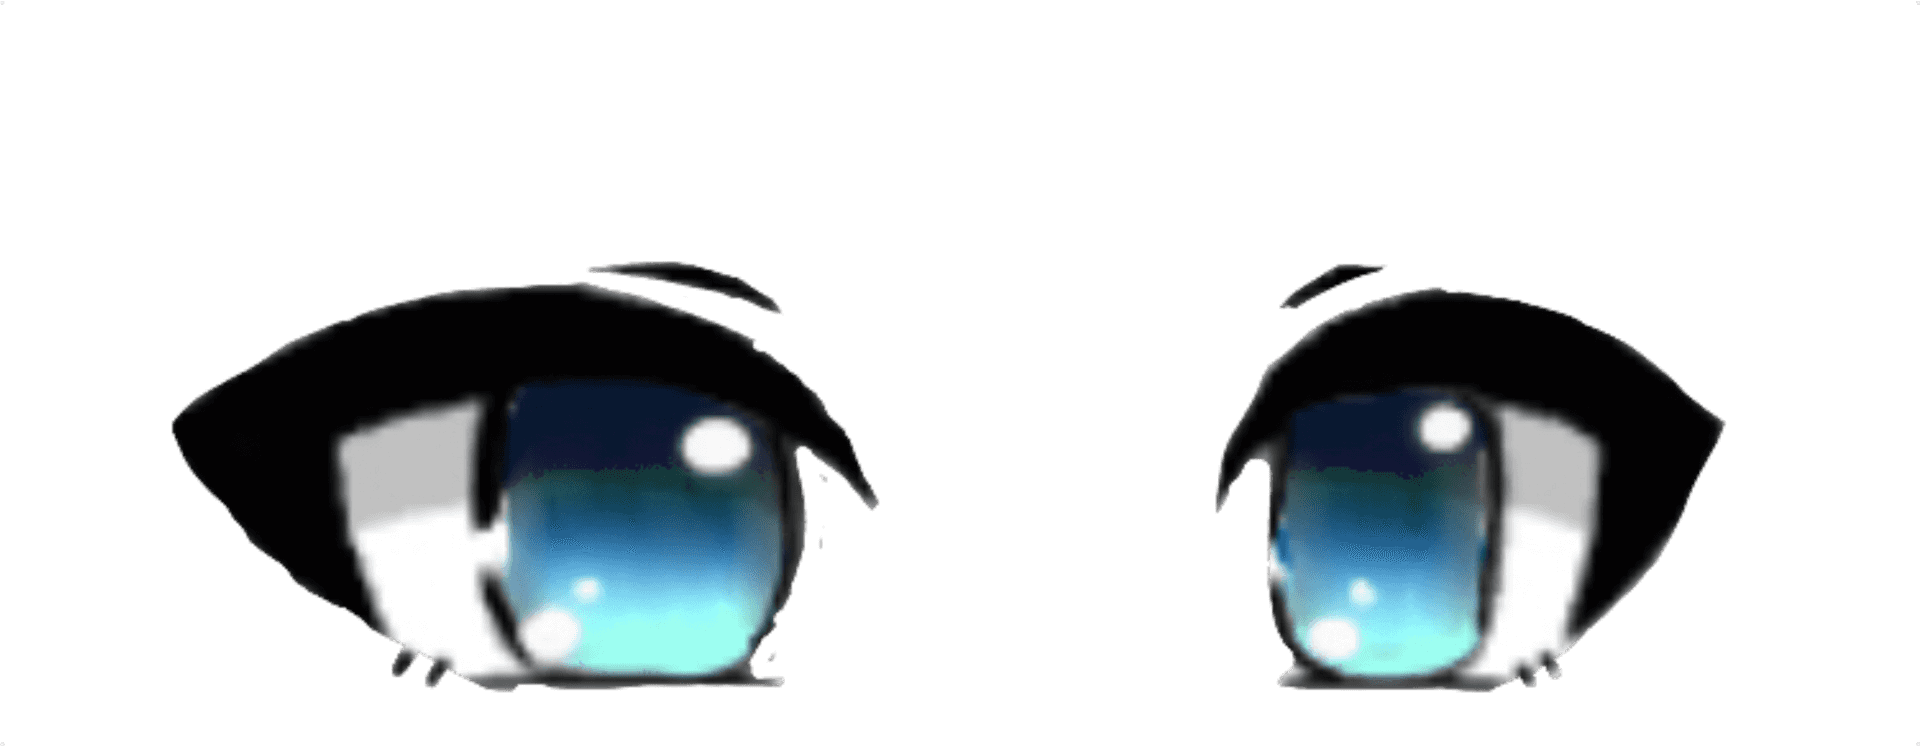 Animated Chibi Eyes Illustration PNG